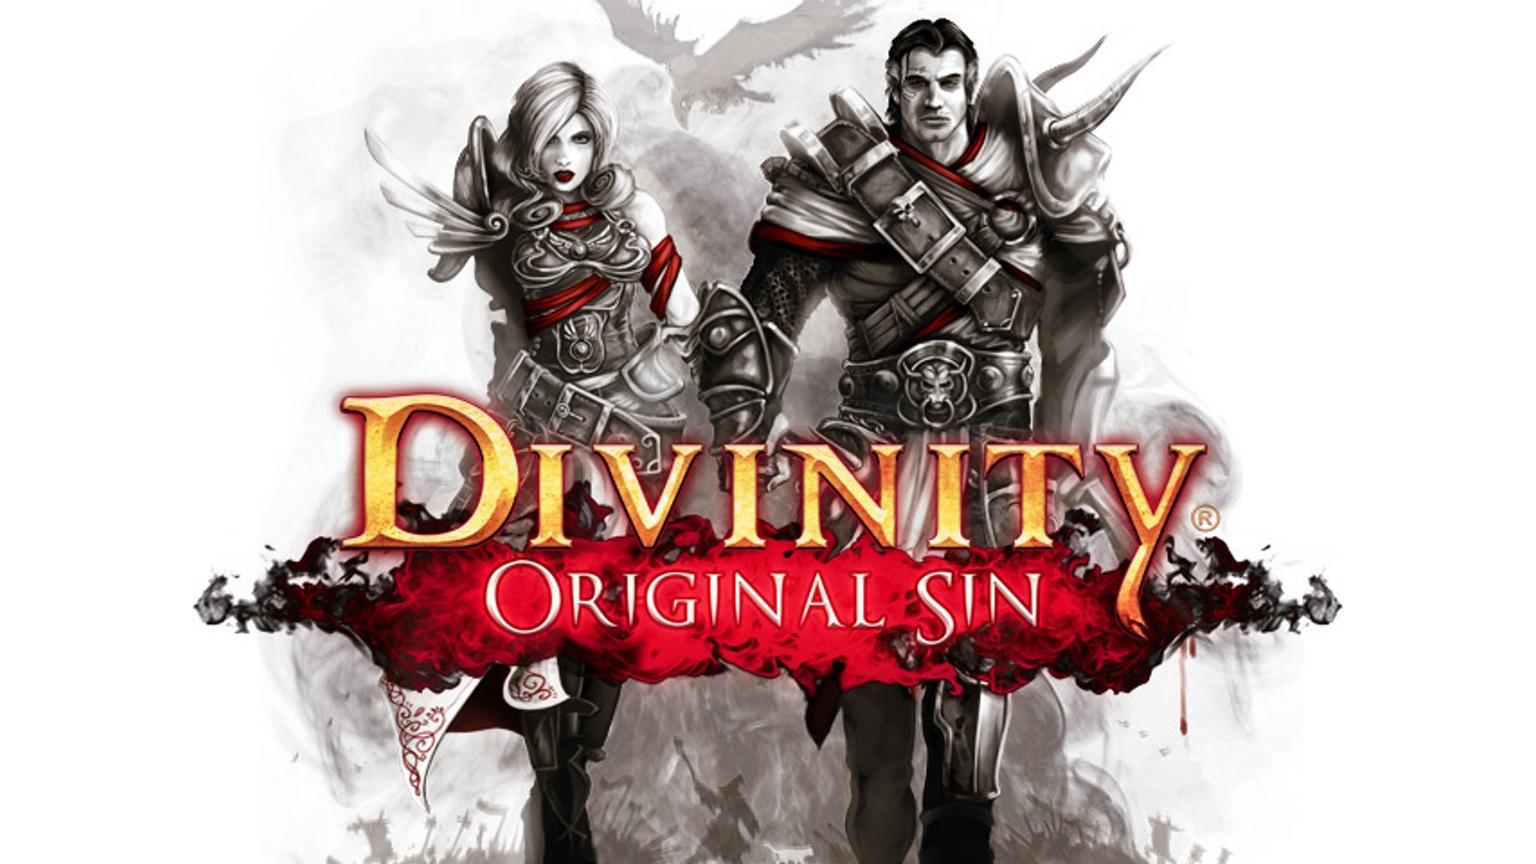 Divinity: Original Sin وهي من أفضل ألعاب الكمبيوتر